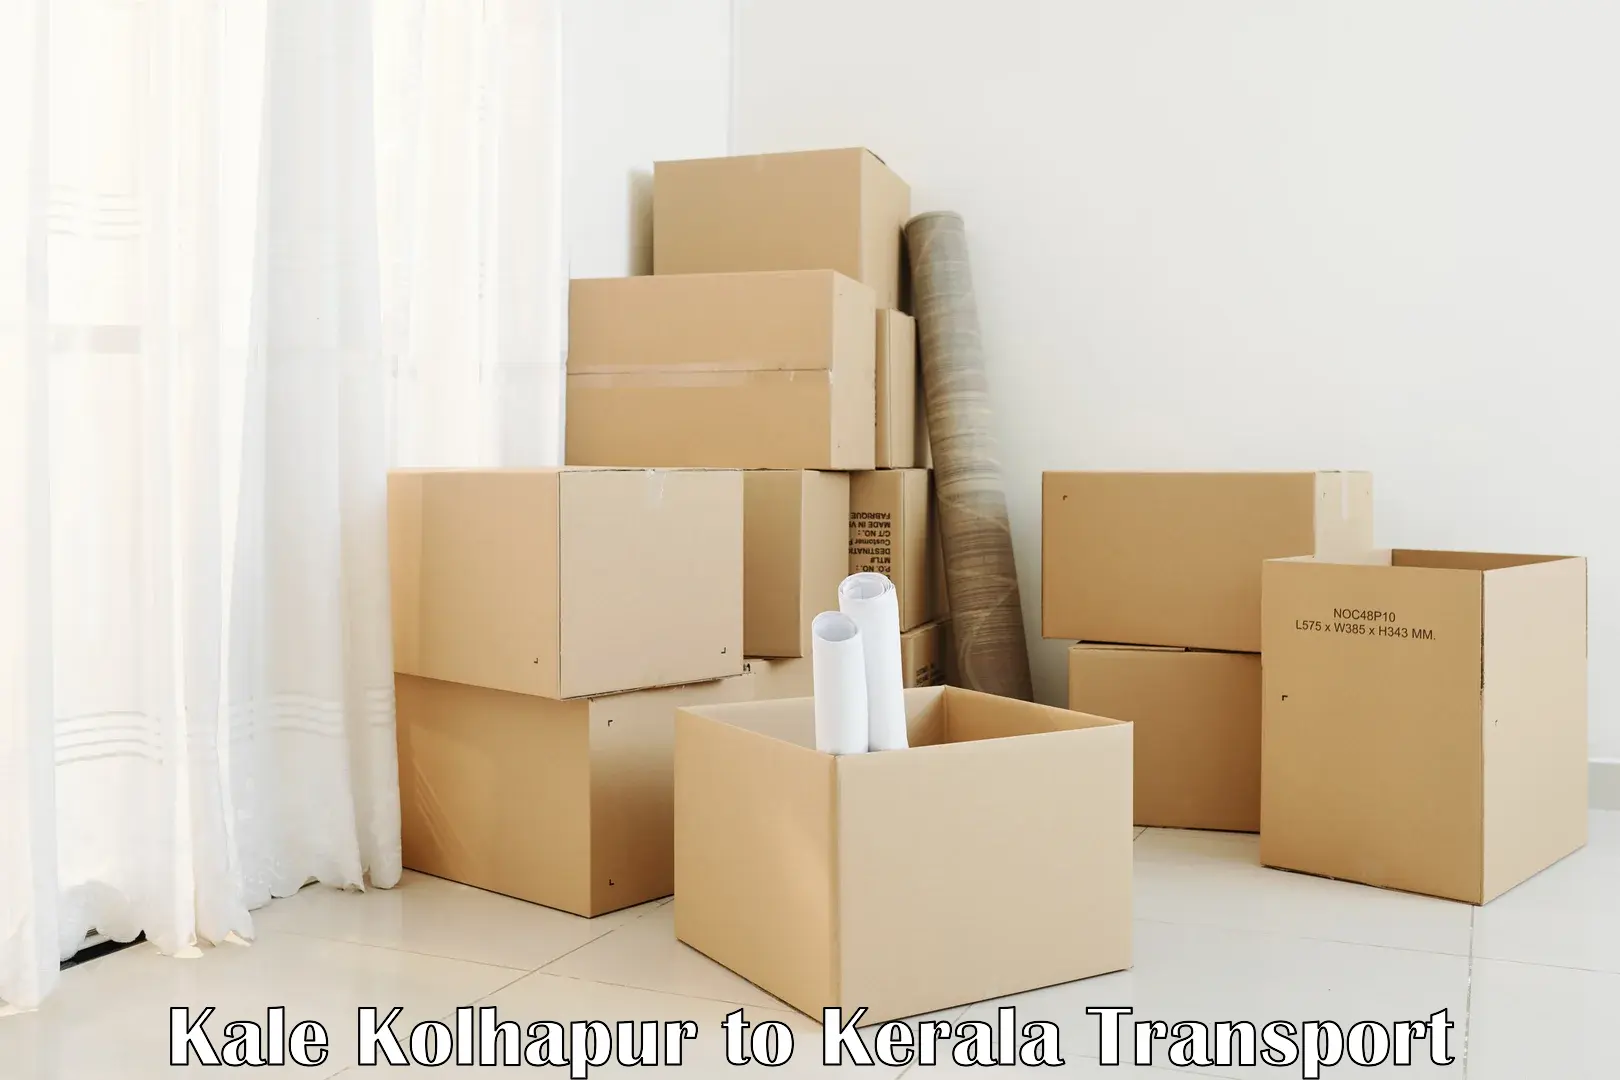 Furniture transport service Kale Kolhapur to Panayathamparamba